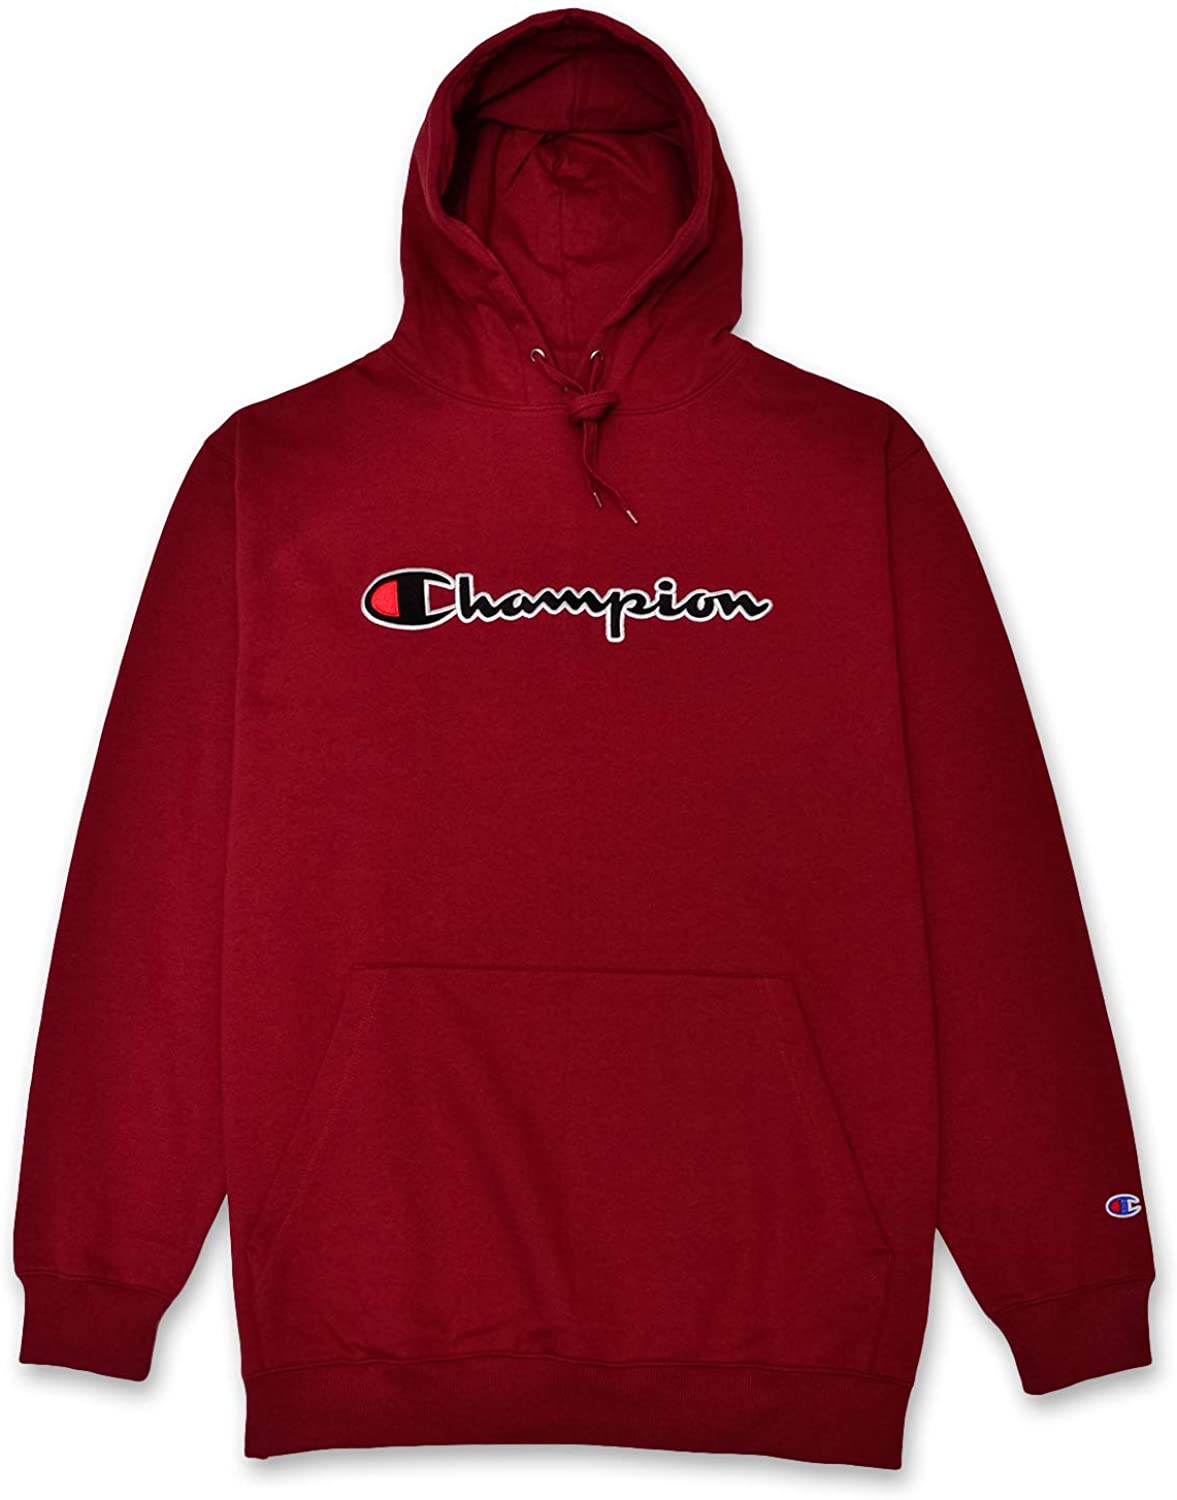 Champion Men's XL Red Hoodie Lightweight Sweatshirt Embroidered